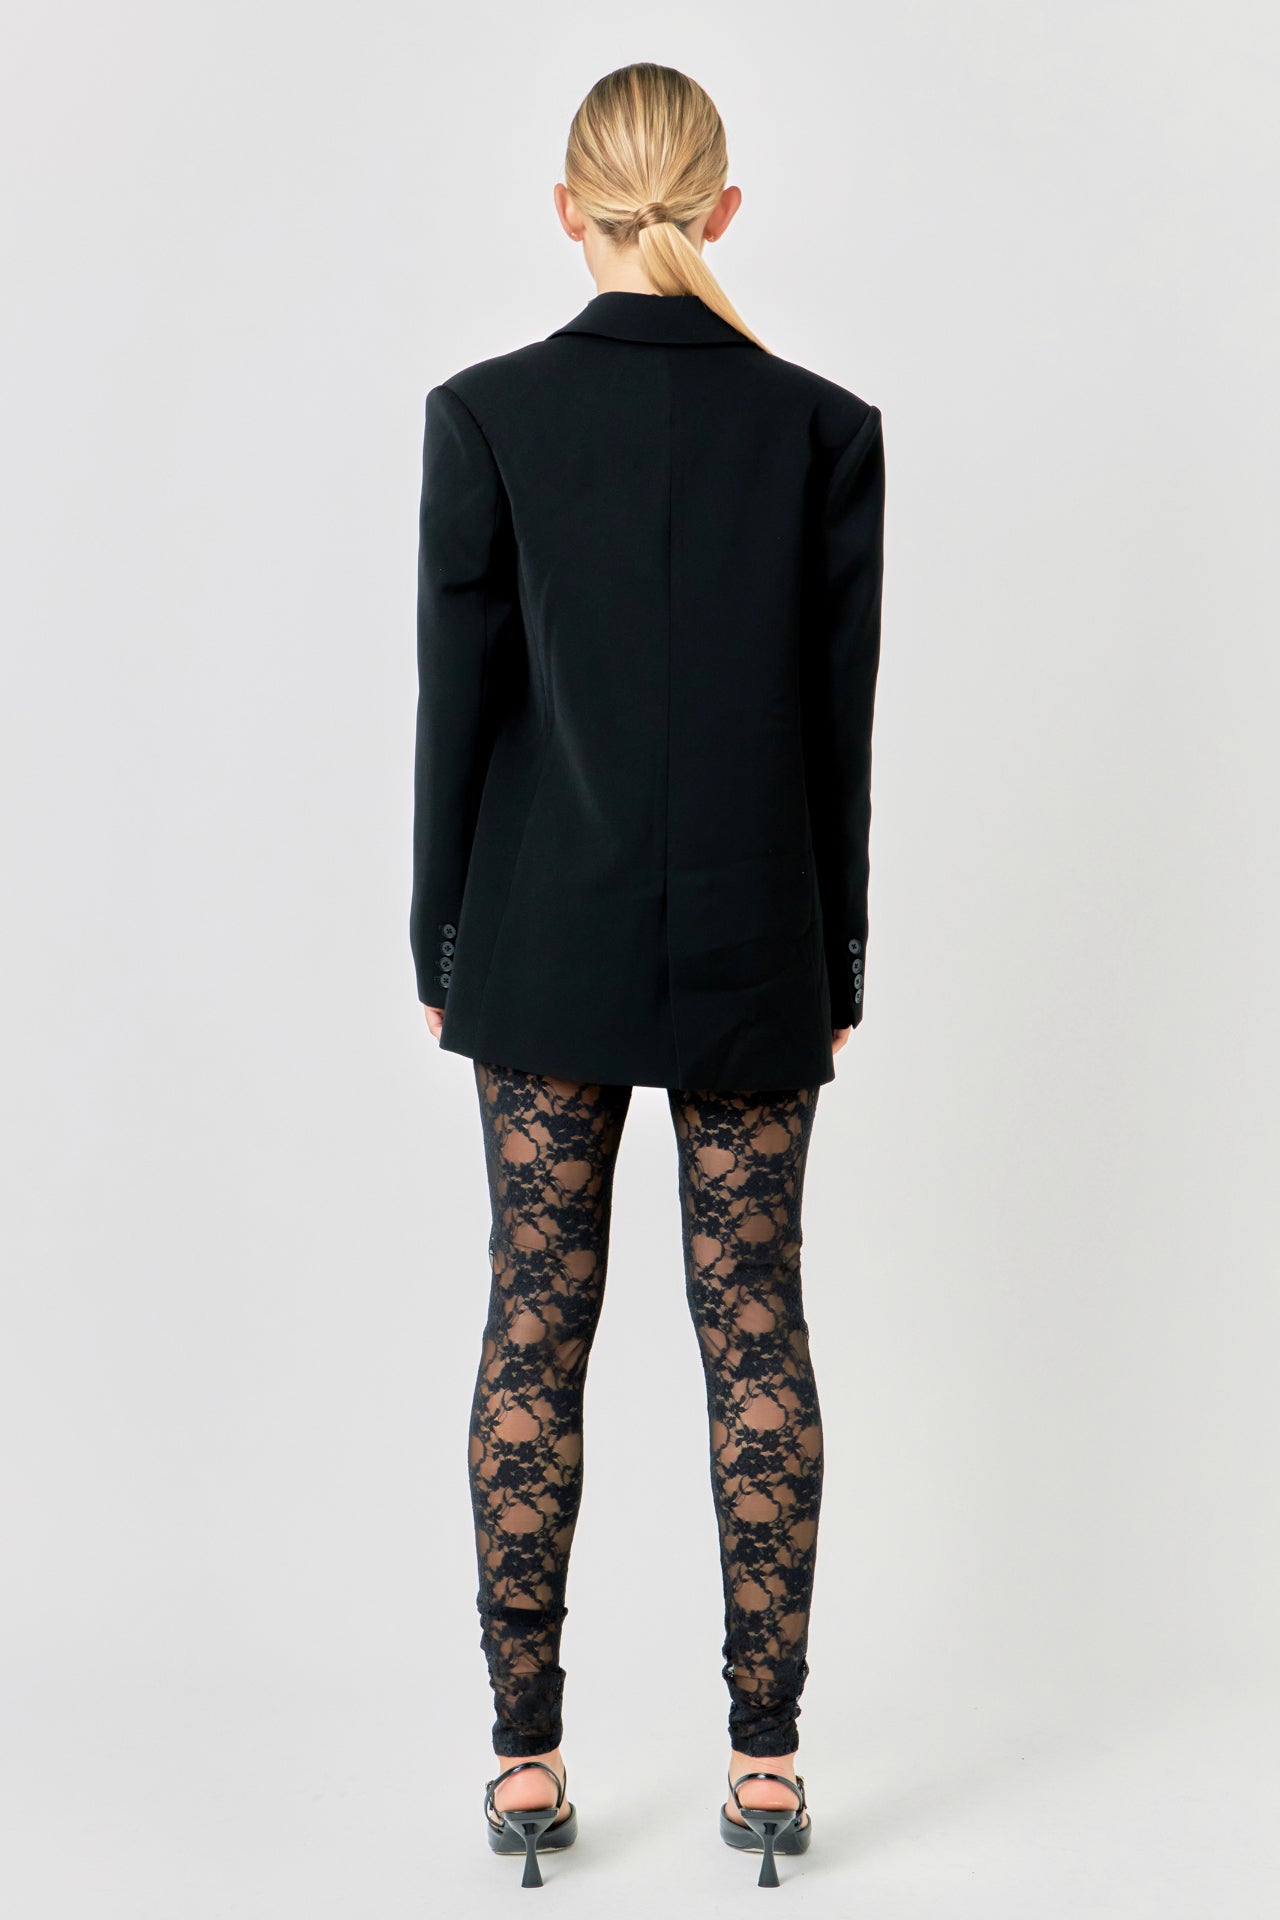 Plain Ladies Black Formal Cotton Pant, Waist Size: 32 at Rs 350/piece in  Delhi